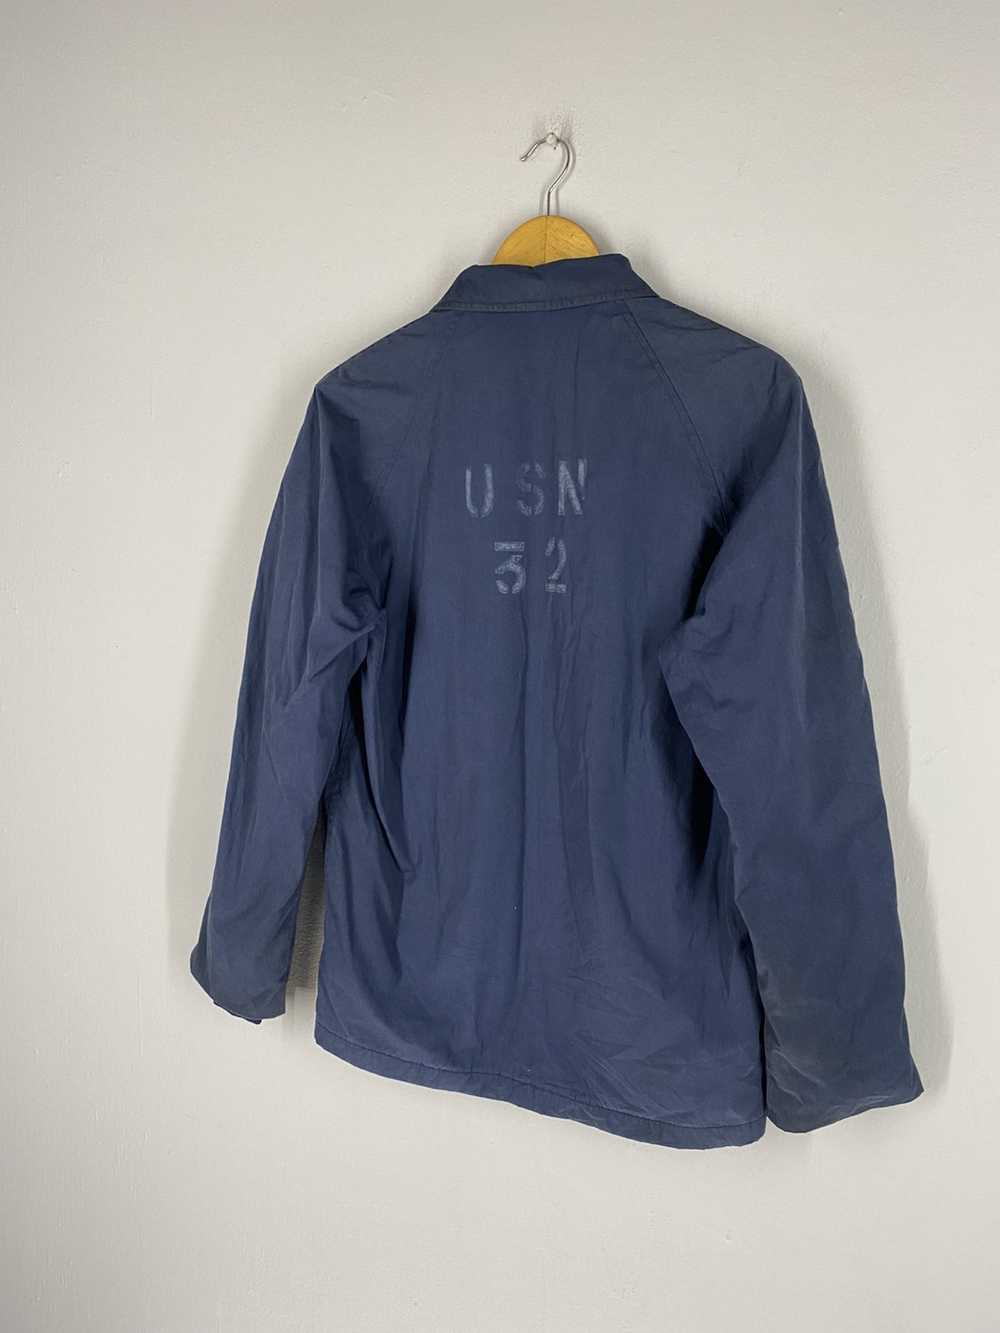 Usn Vintage 80s USN 32 Top Zipper Jacket - image 2